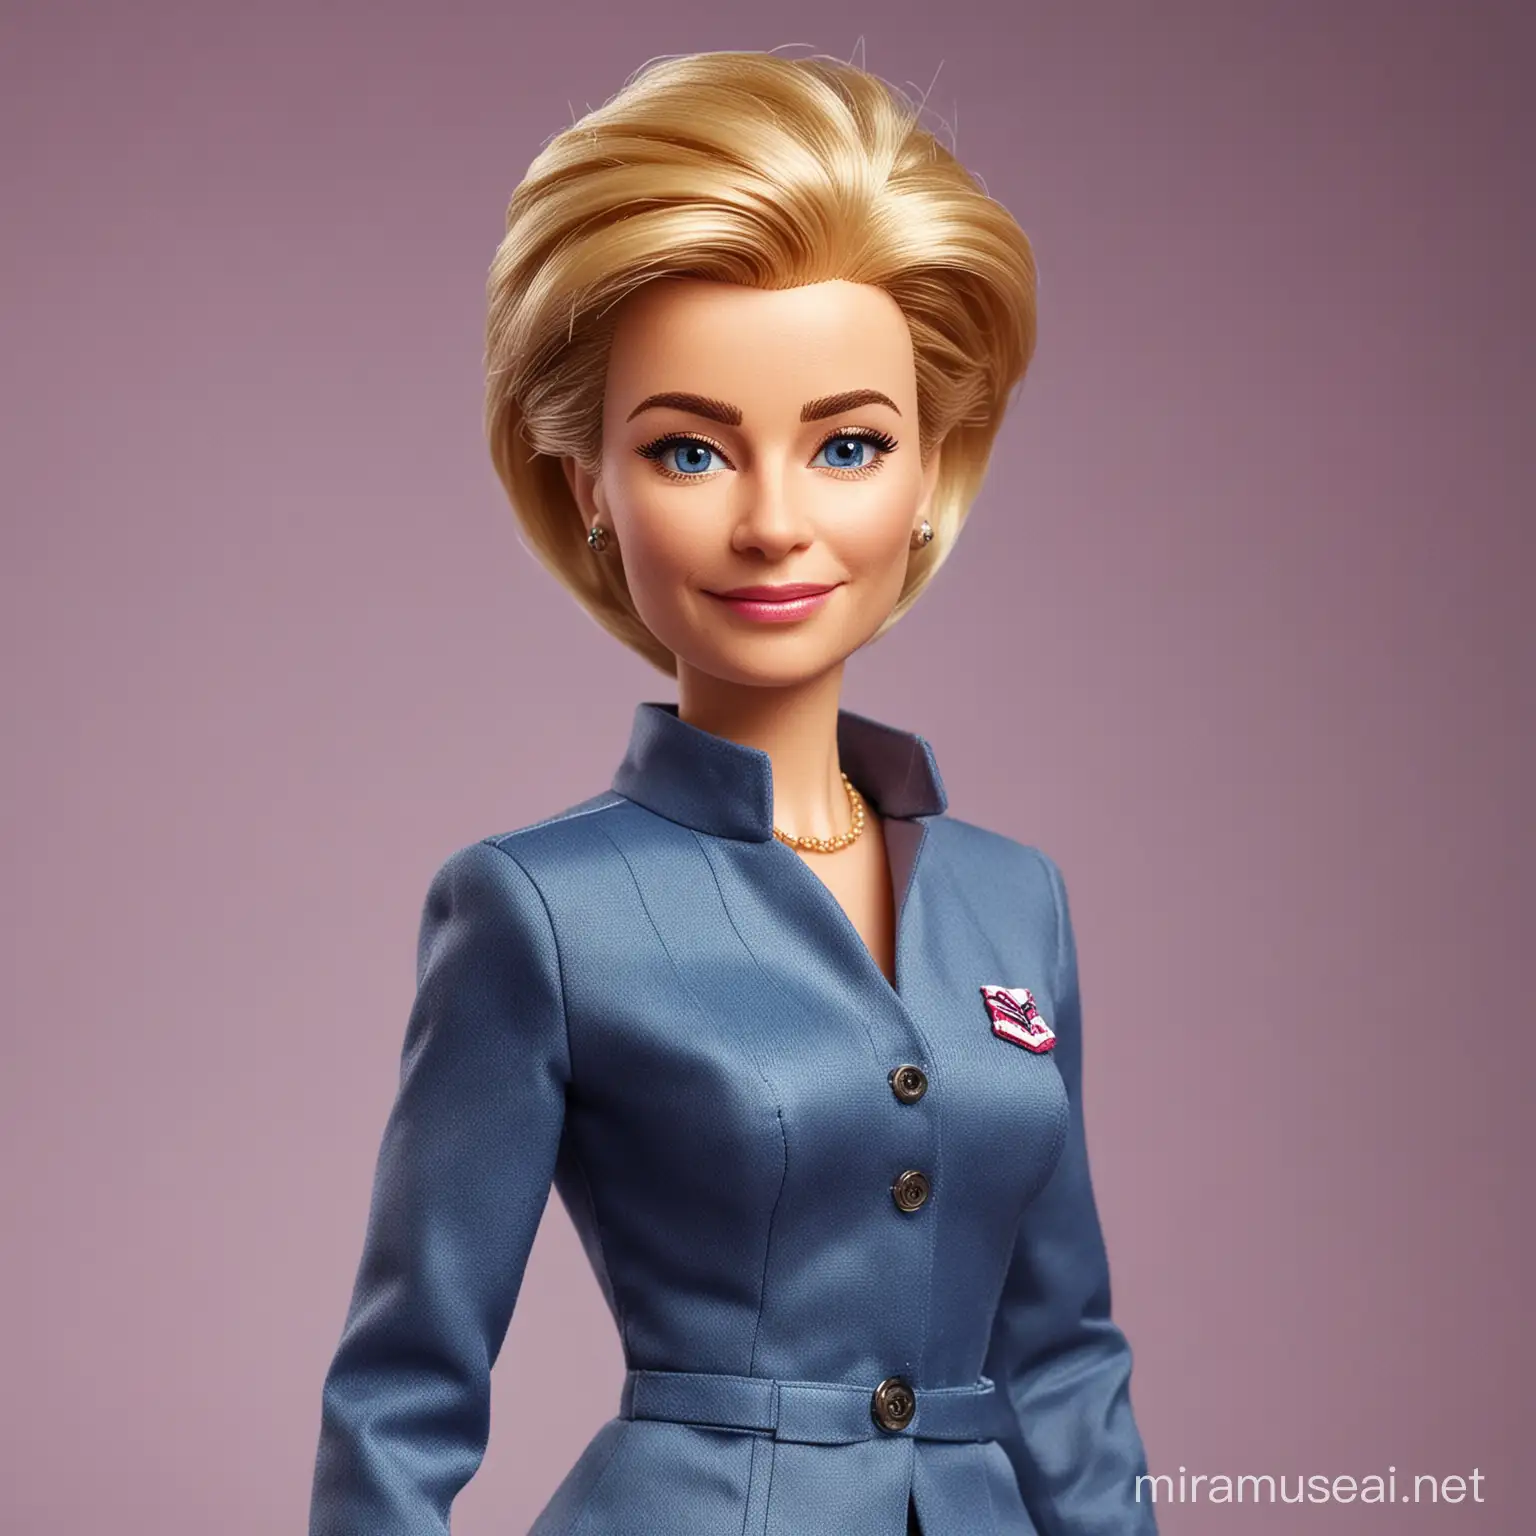 Ursula von der Leyen Barbie Doll Transformation Portrait